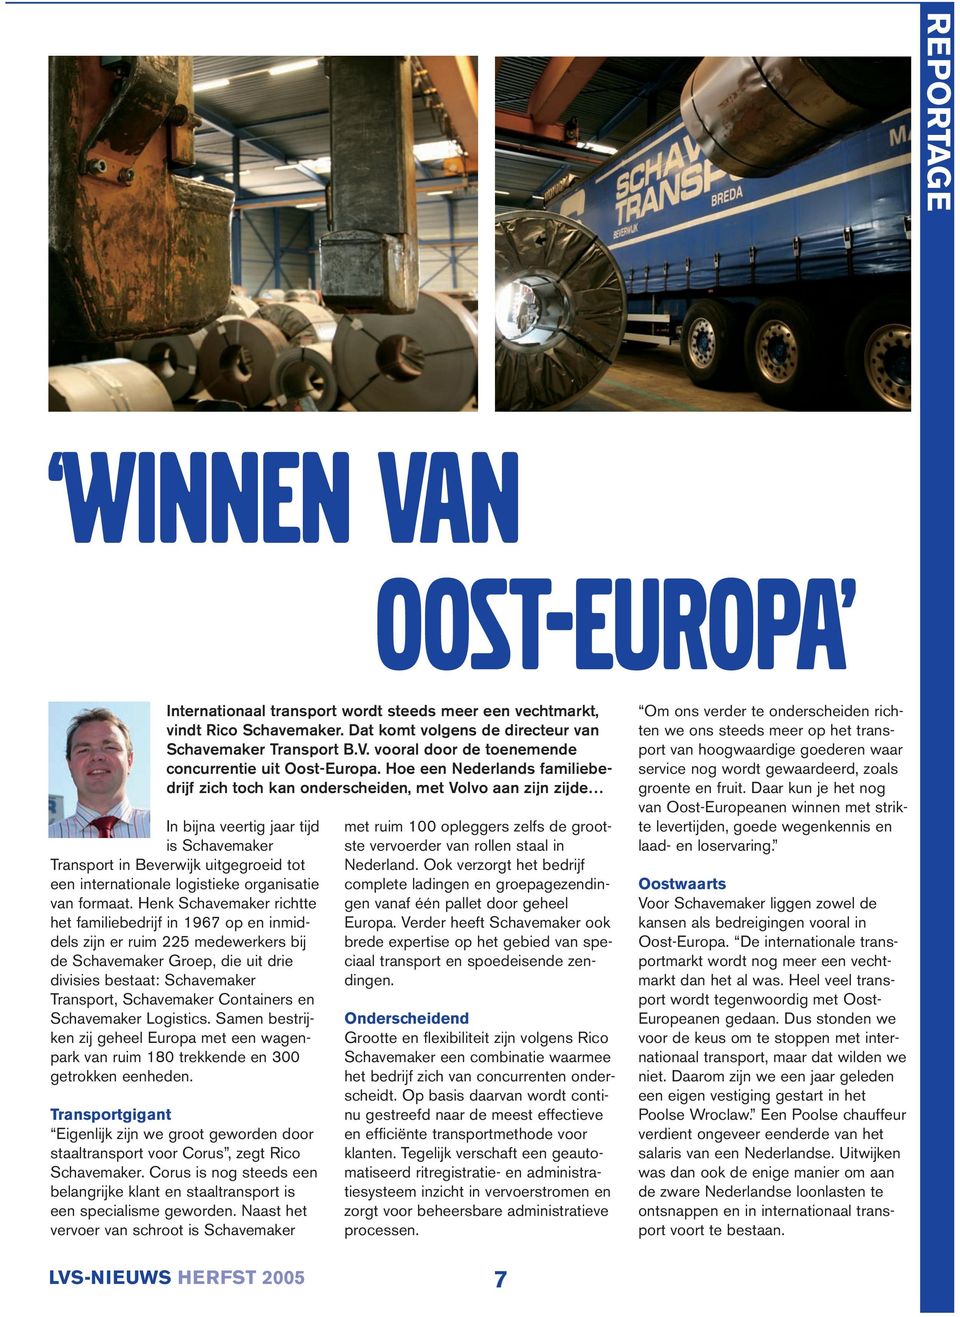 Hoe een Nederlands familiebedrijf zich toch kan onderscheiden, met Volvo aan zijn zijde In bijna veertig jaar tijd is Schavemaker Transport in Beverwijk uitgegroeid tot een internationale logistieke